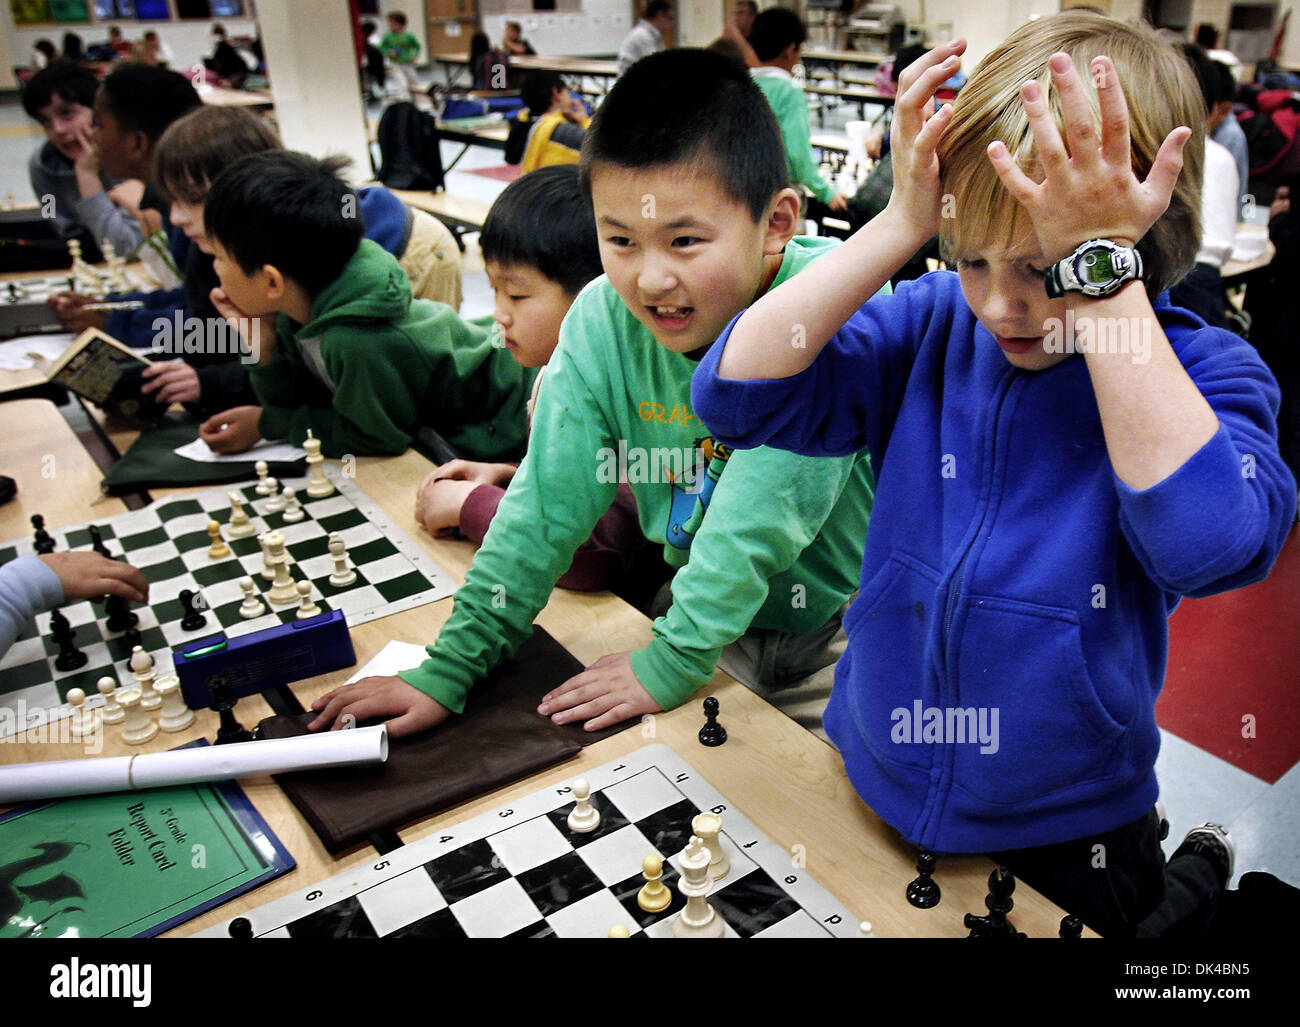 30 mars 2011 - Memphis, TN, États-Unis - 30 mars 2011 - quatrième année primaire Grahamwood Michael Rotz, 9, (à droite) réagit après faire une mauvaise décision comme Kevin Cao, 8, gauche, regarde au cours de chess club pratique le mercredi après-midi. Les deux étudiants en dehors de l'école où l'équipe de l'état qui a remporté le tournoi d'échecs au cours du week-end dans la région de Cookeville, Tn. (Crédit Image : © l'appel Commercial/ZUM Banque D'Images